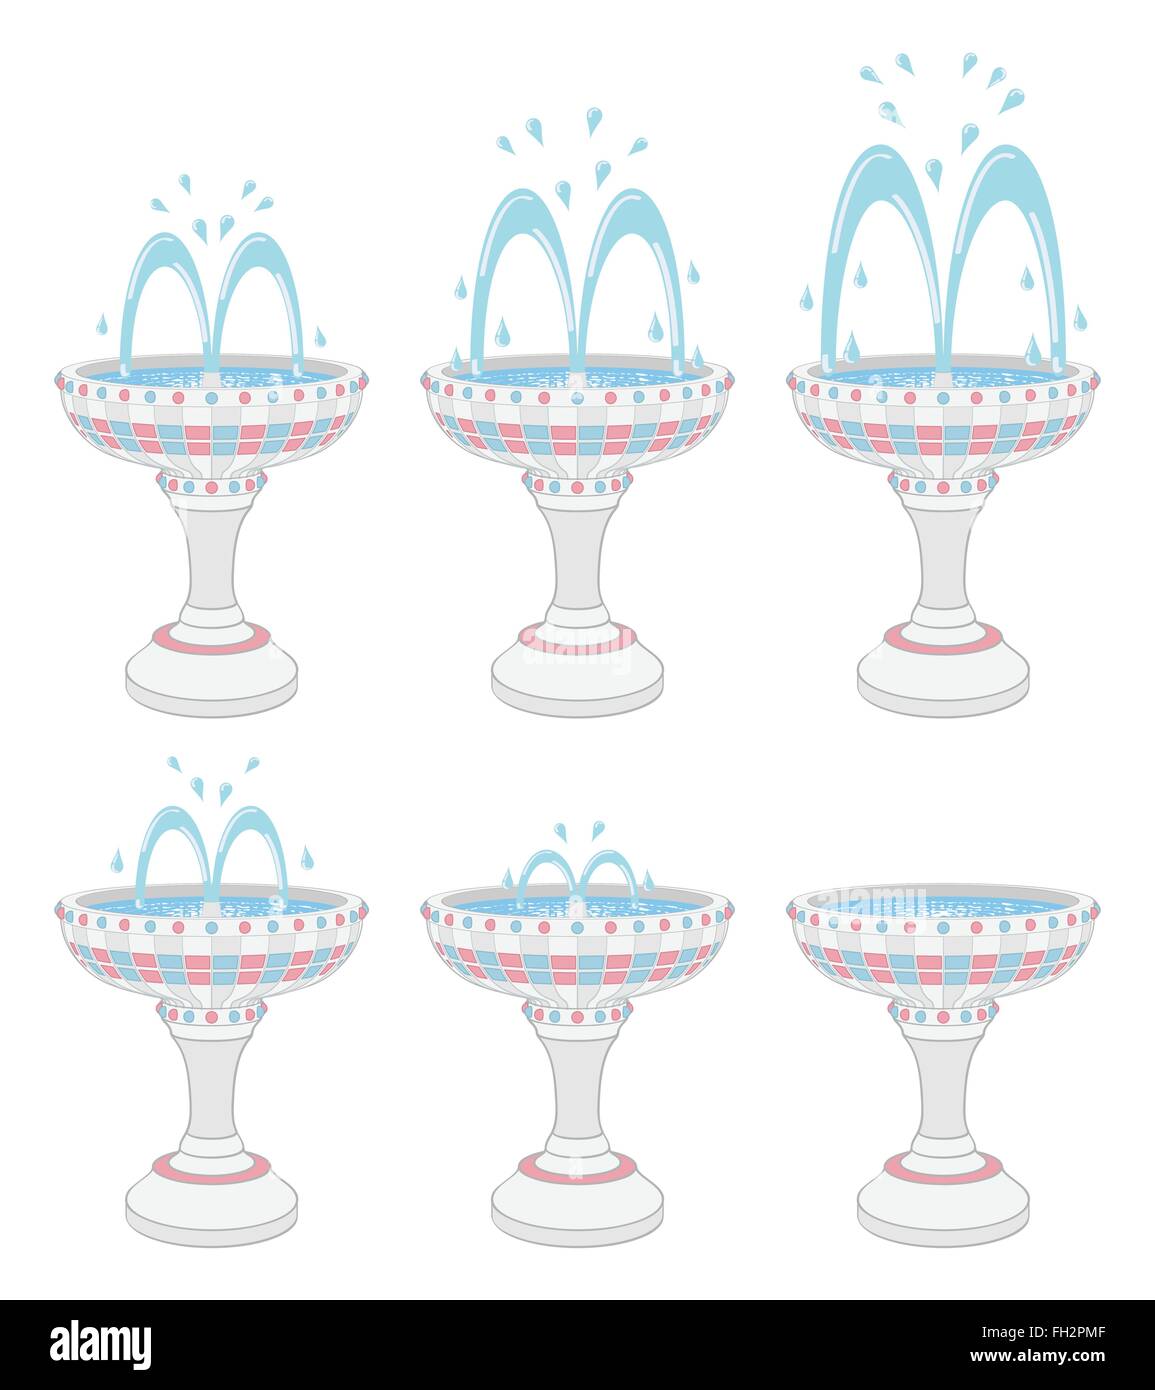 Fontaines avec différents niveaux d'eau Illustration de Vecteur